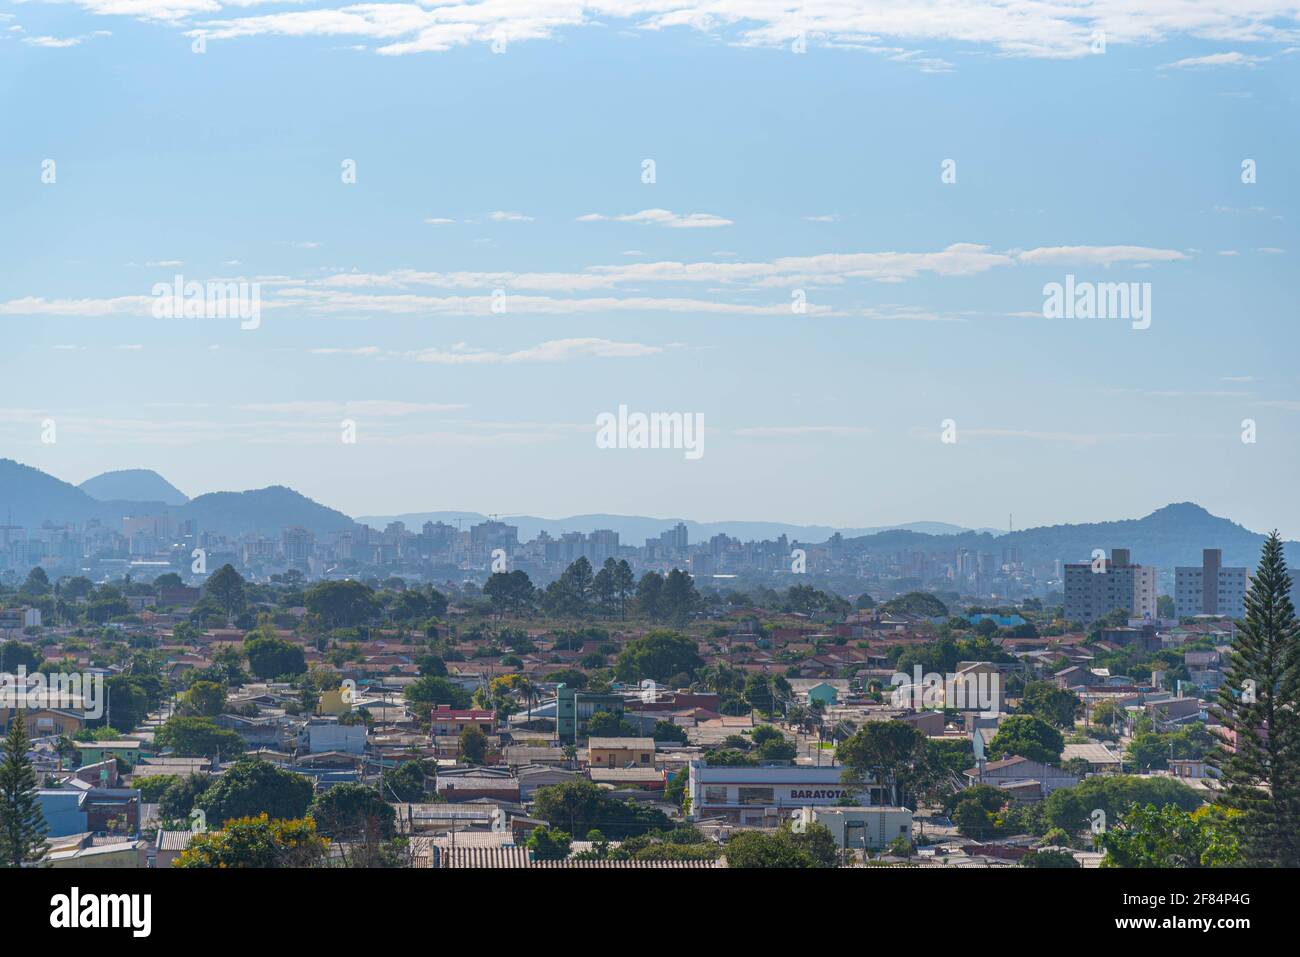 Vue panoramique sur la ville de Santa Maria dans l'État du Rio Grande do Sul au Brésil. Ville au coeur de l'État. Cheminée de la discothèque Kiss. U Banque D'Images